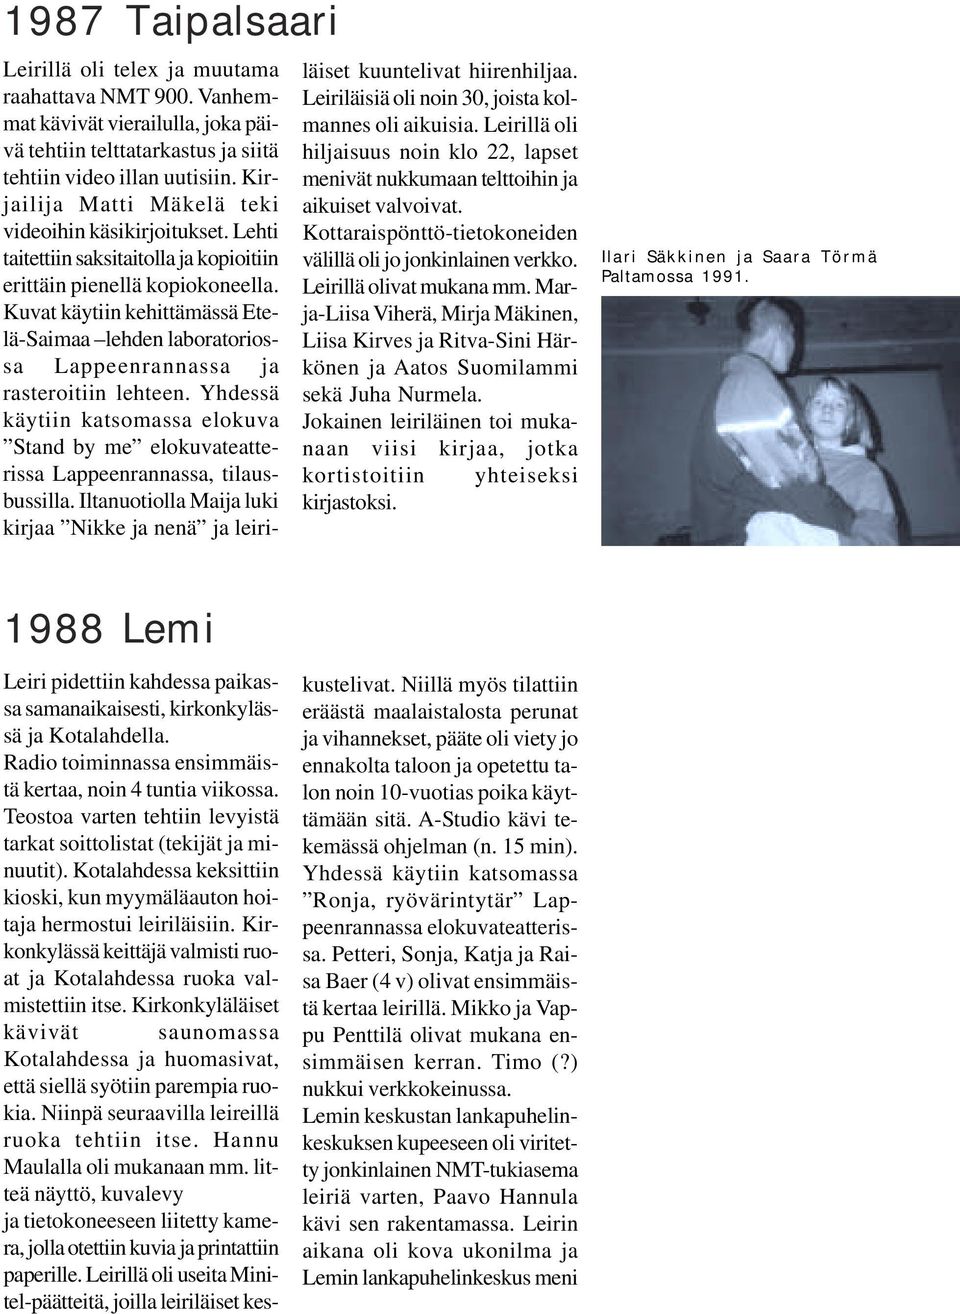 Kuvat käytiin kehittämässä Etelä-Saimaa lehden laboratoriossa Lappeenrannassa ja rasteroitiin lehteen.